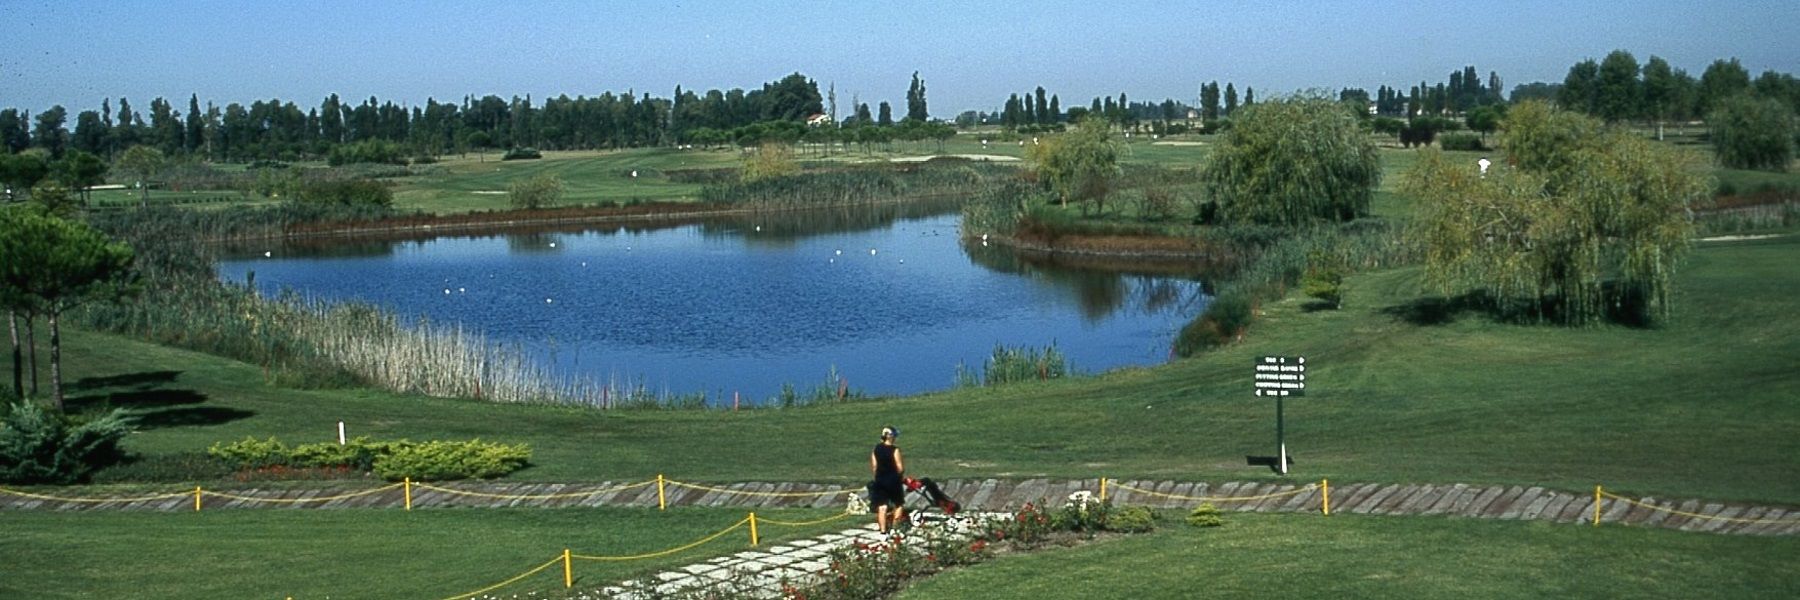 Adriatic Golf Club Cervia - Rendez-vous en mai